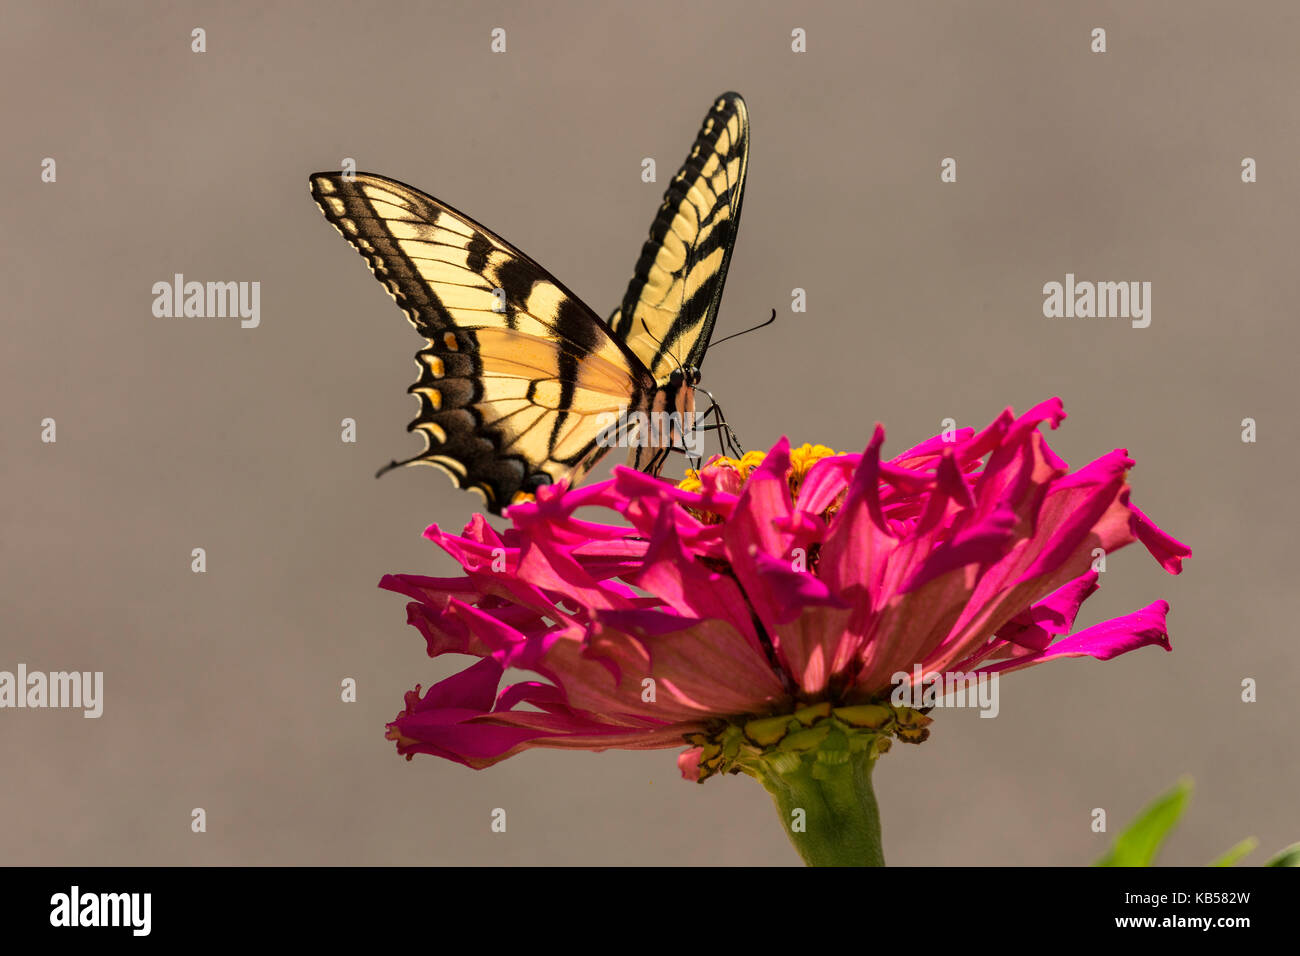 Giant Swallowtail feeding on Zinnia flower. Stock Photo